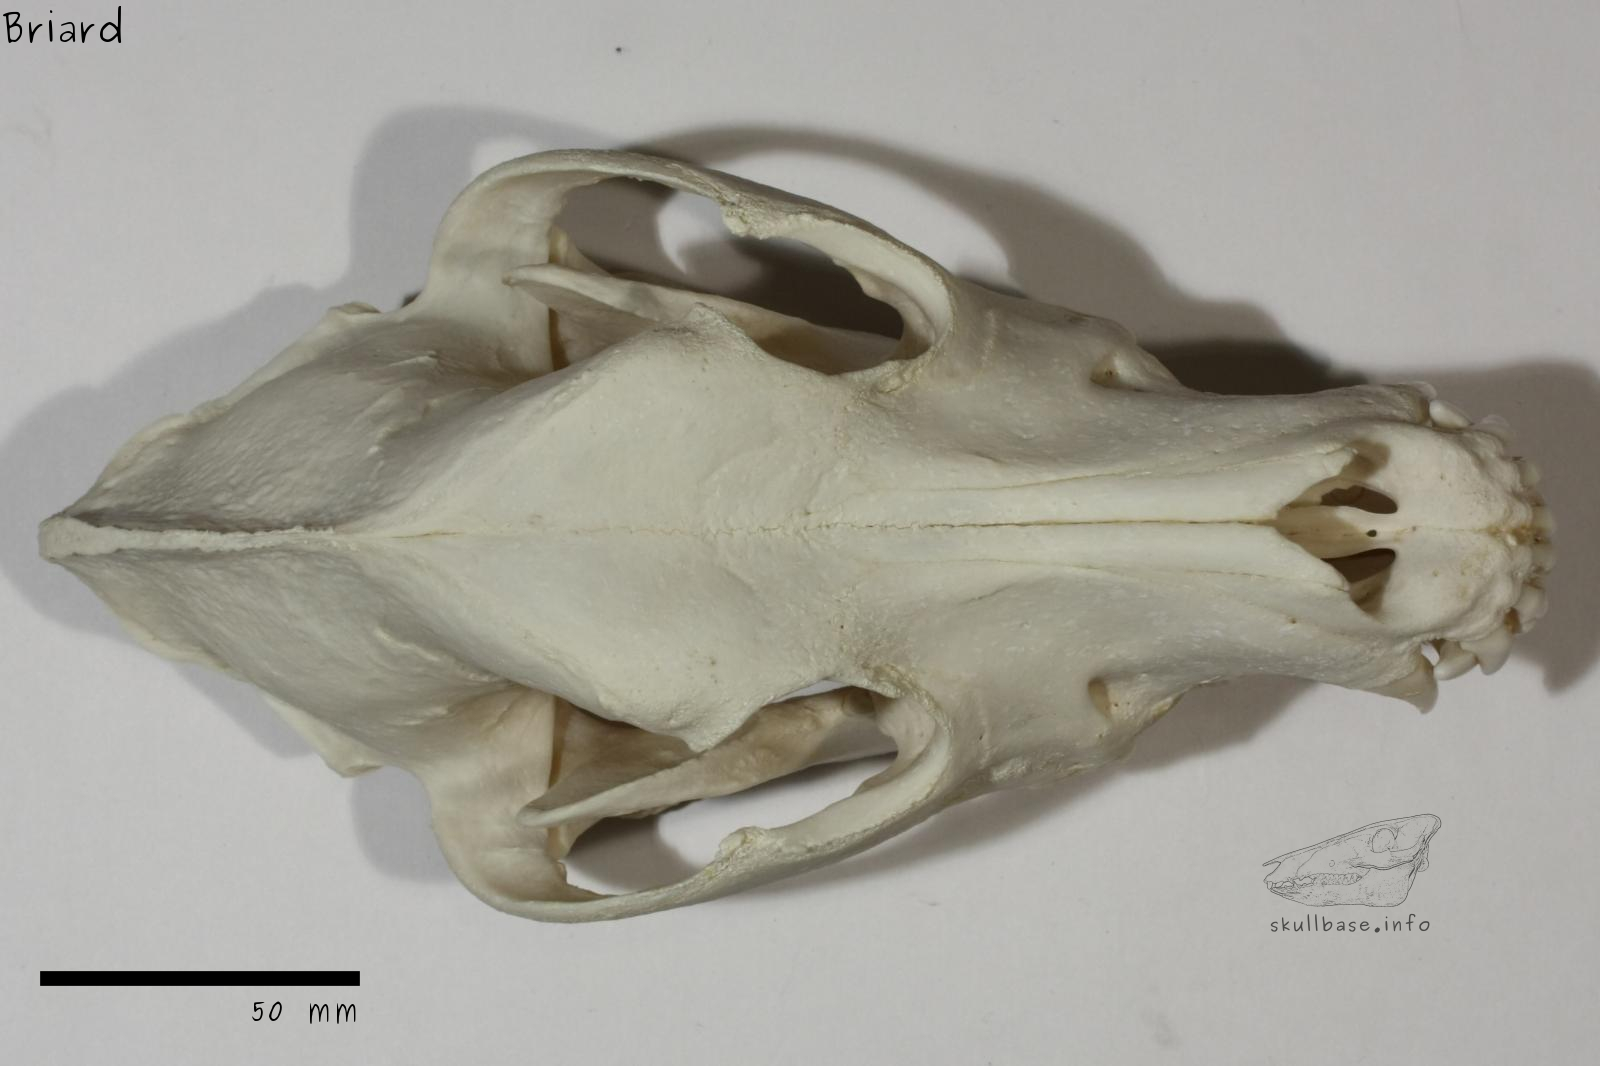 Briard (Canis lupus familiaris) skull dorsal view